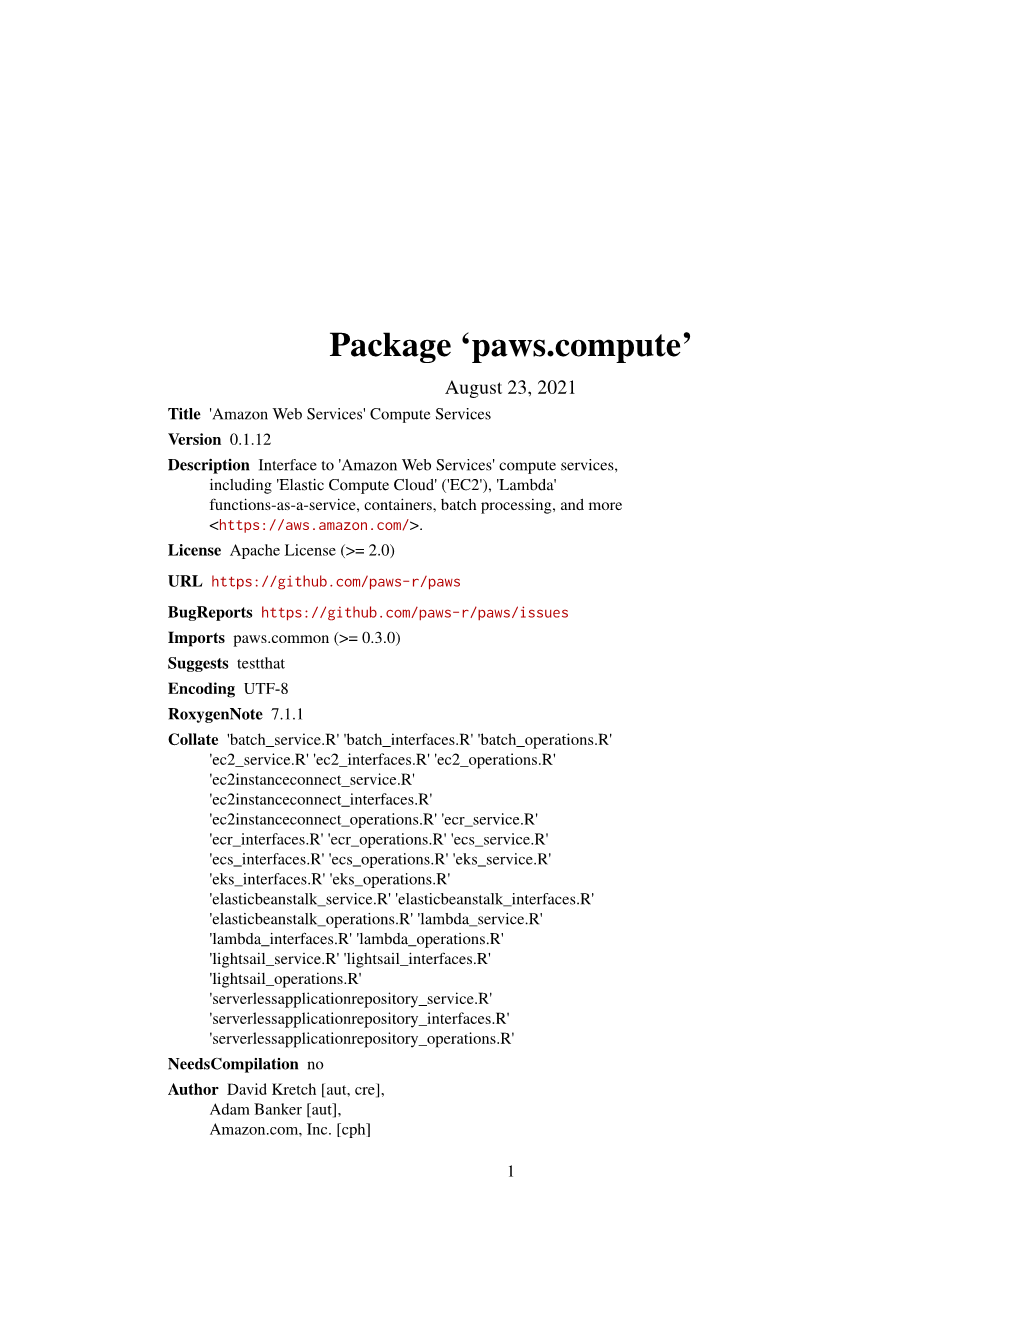 Paws.Compute: 'Amazon Web Services' Compute Services